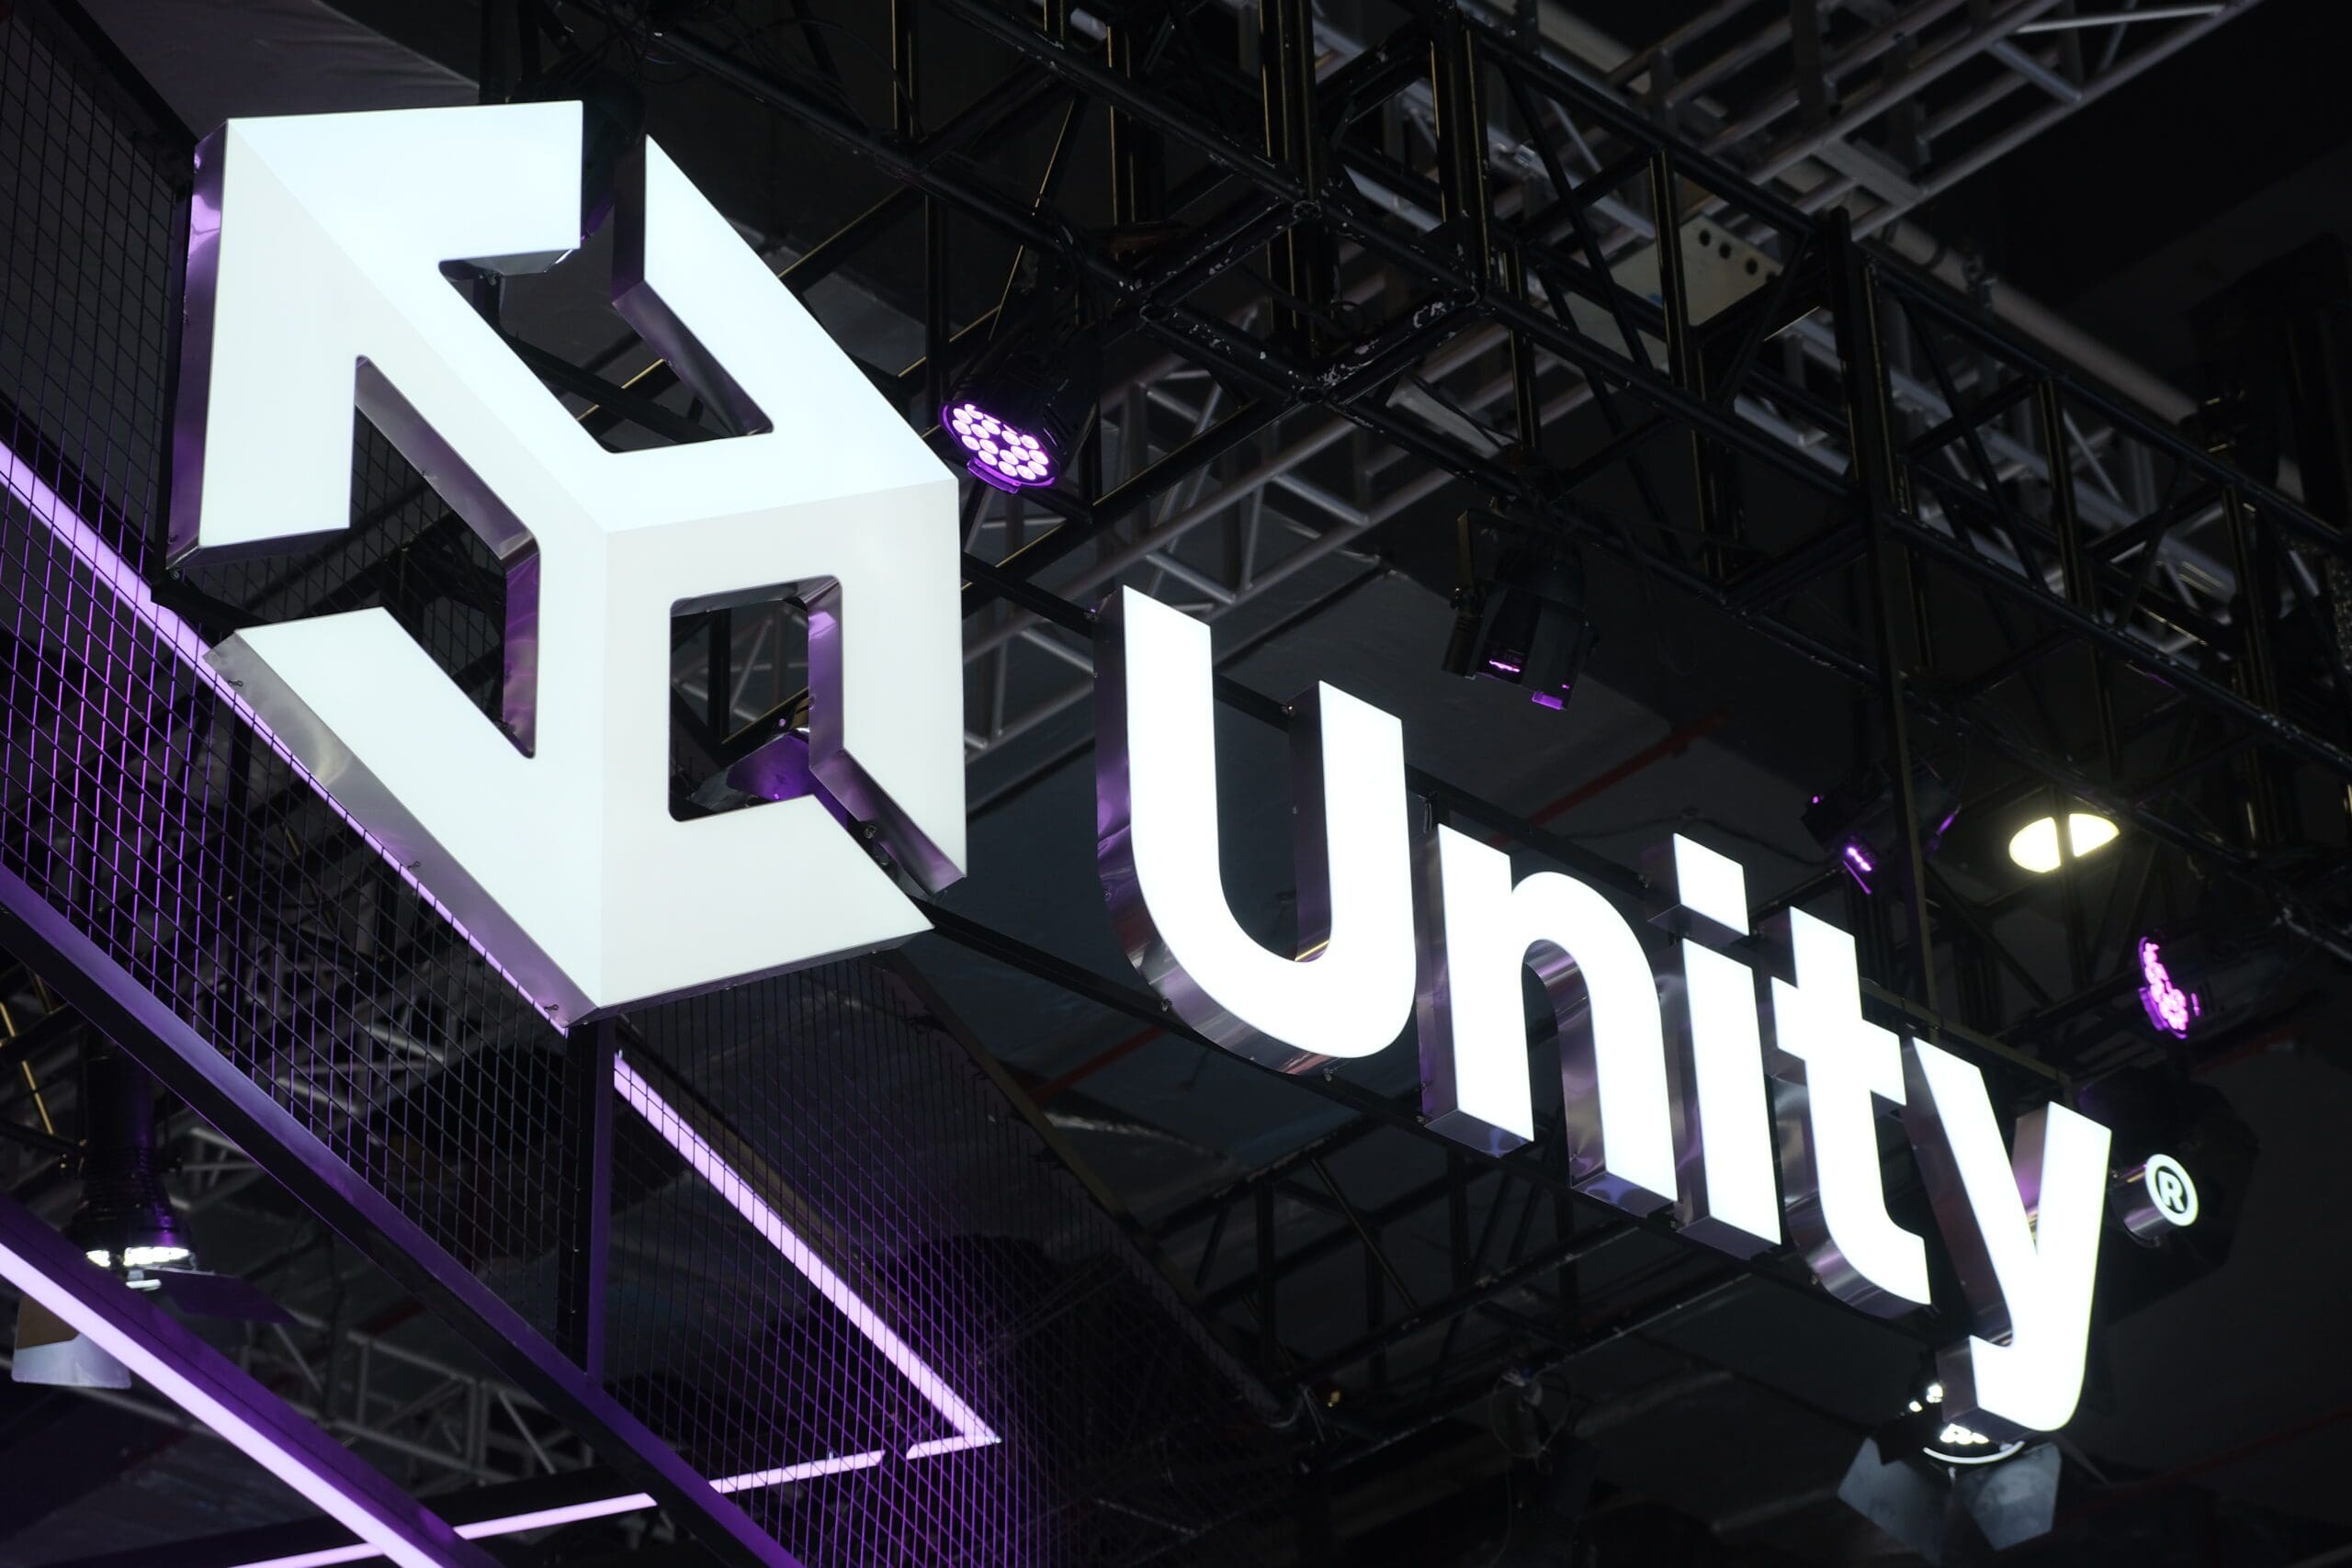 Das beleuchtete Logo von Unity, einer führenden Plattform für Game Development, hängt an einer Messestanddecke, umgeben von violetter Beleuchtung.